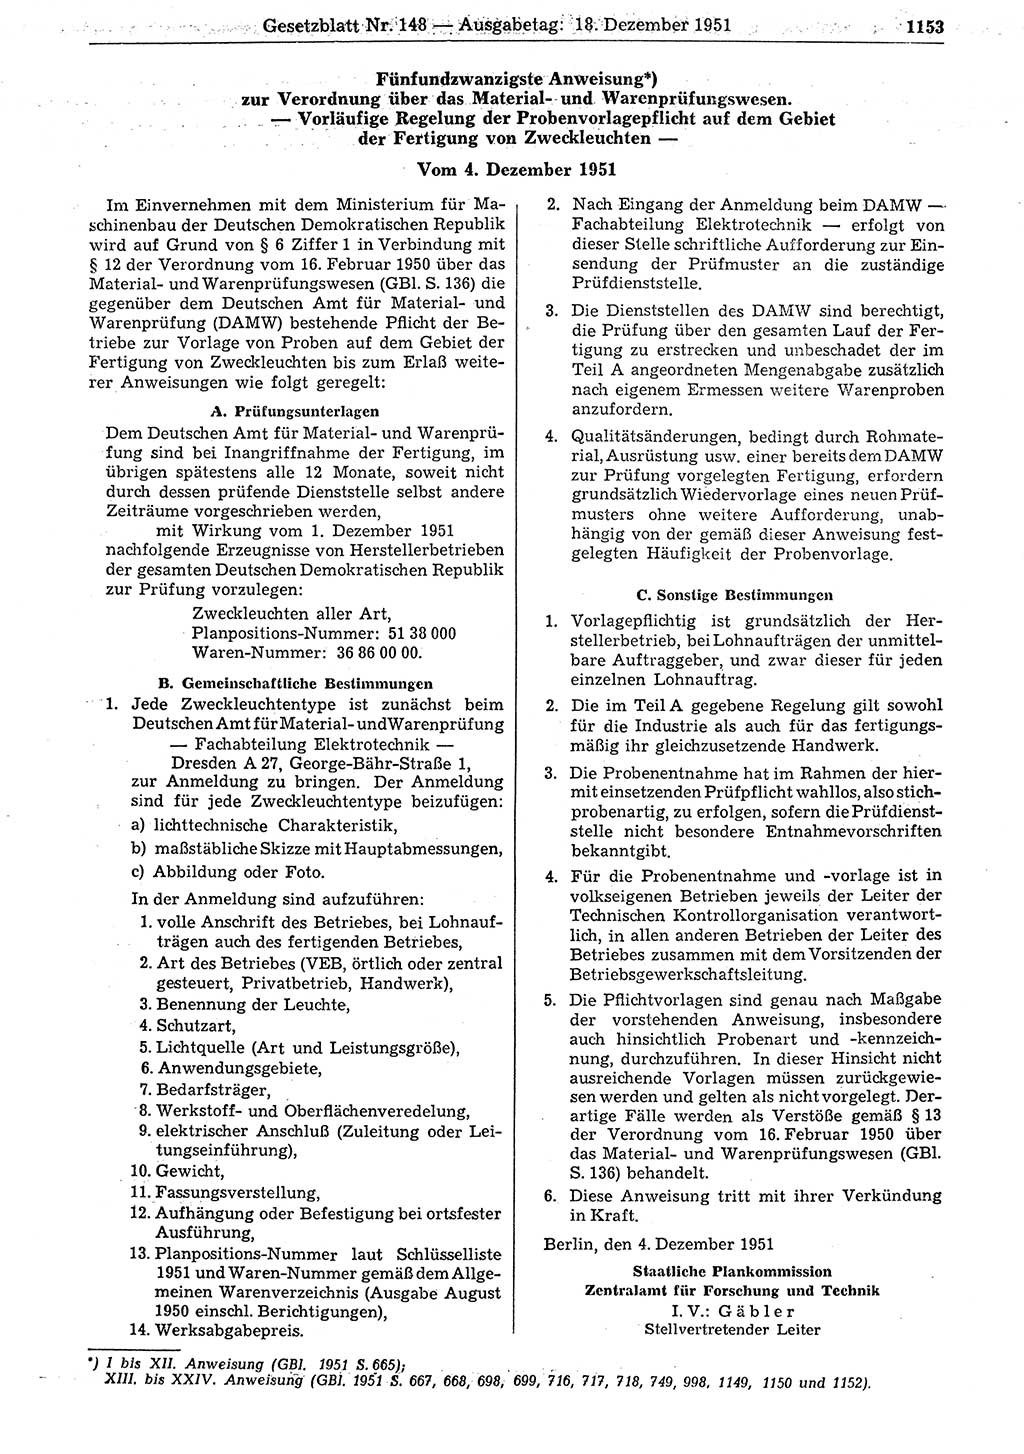 Gesetzblatt (GBl.) der Deutschen Demokratischen Republik (DDR) 1951, Seite 1153 (GBl. DDR 1951, S. 1153)